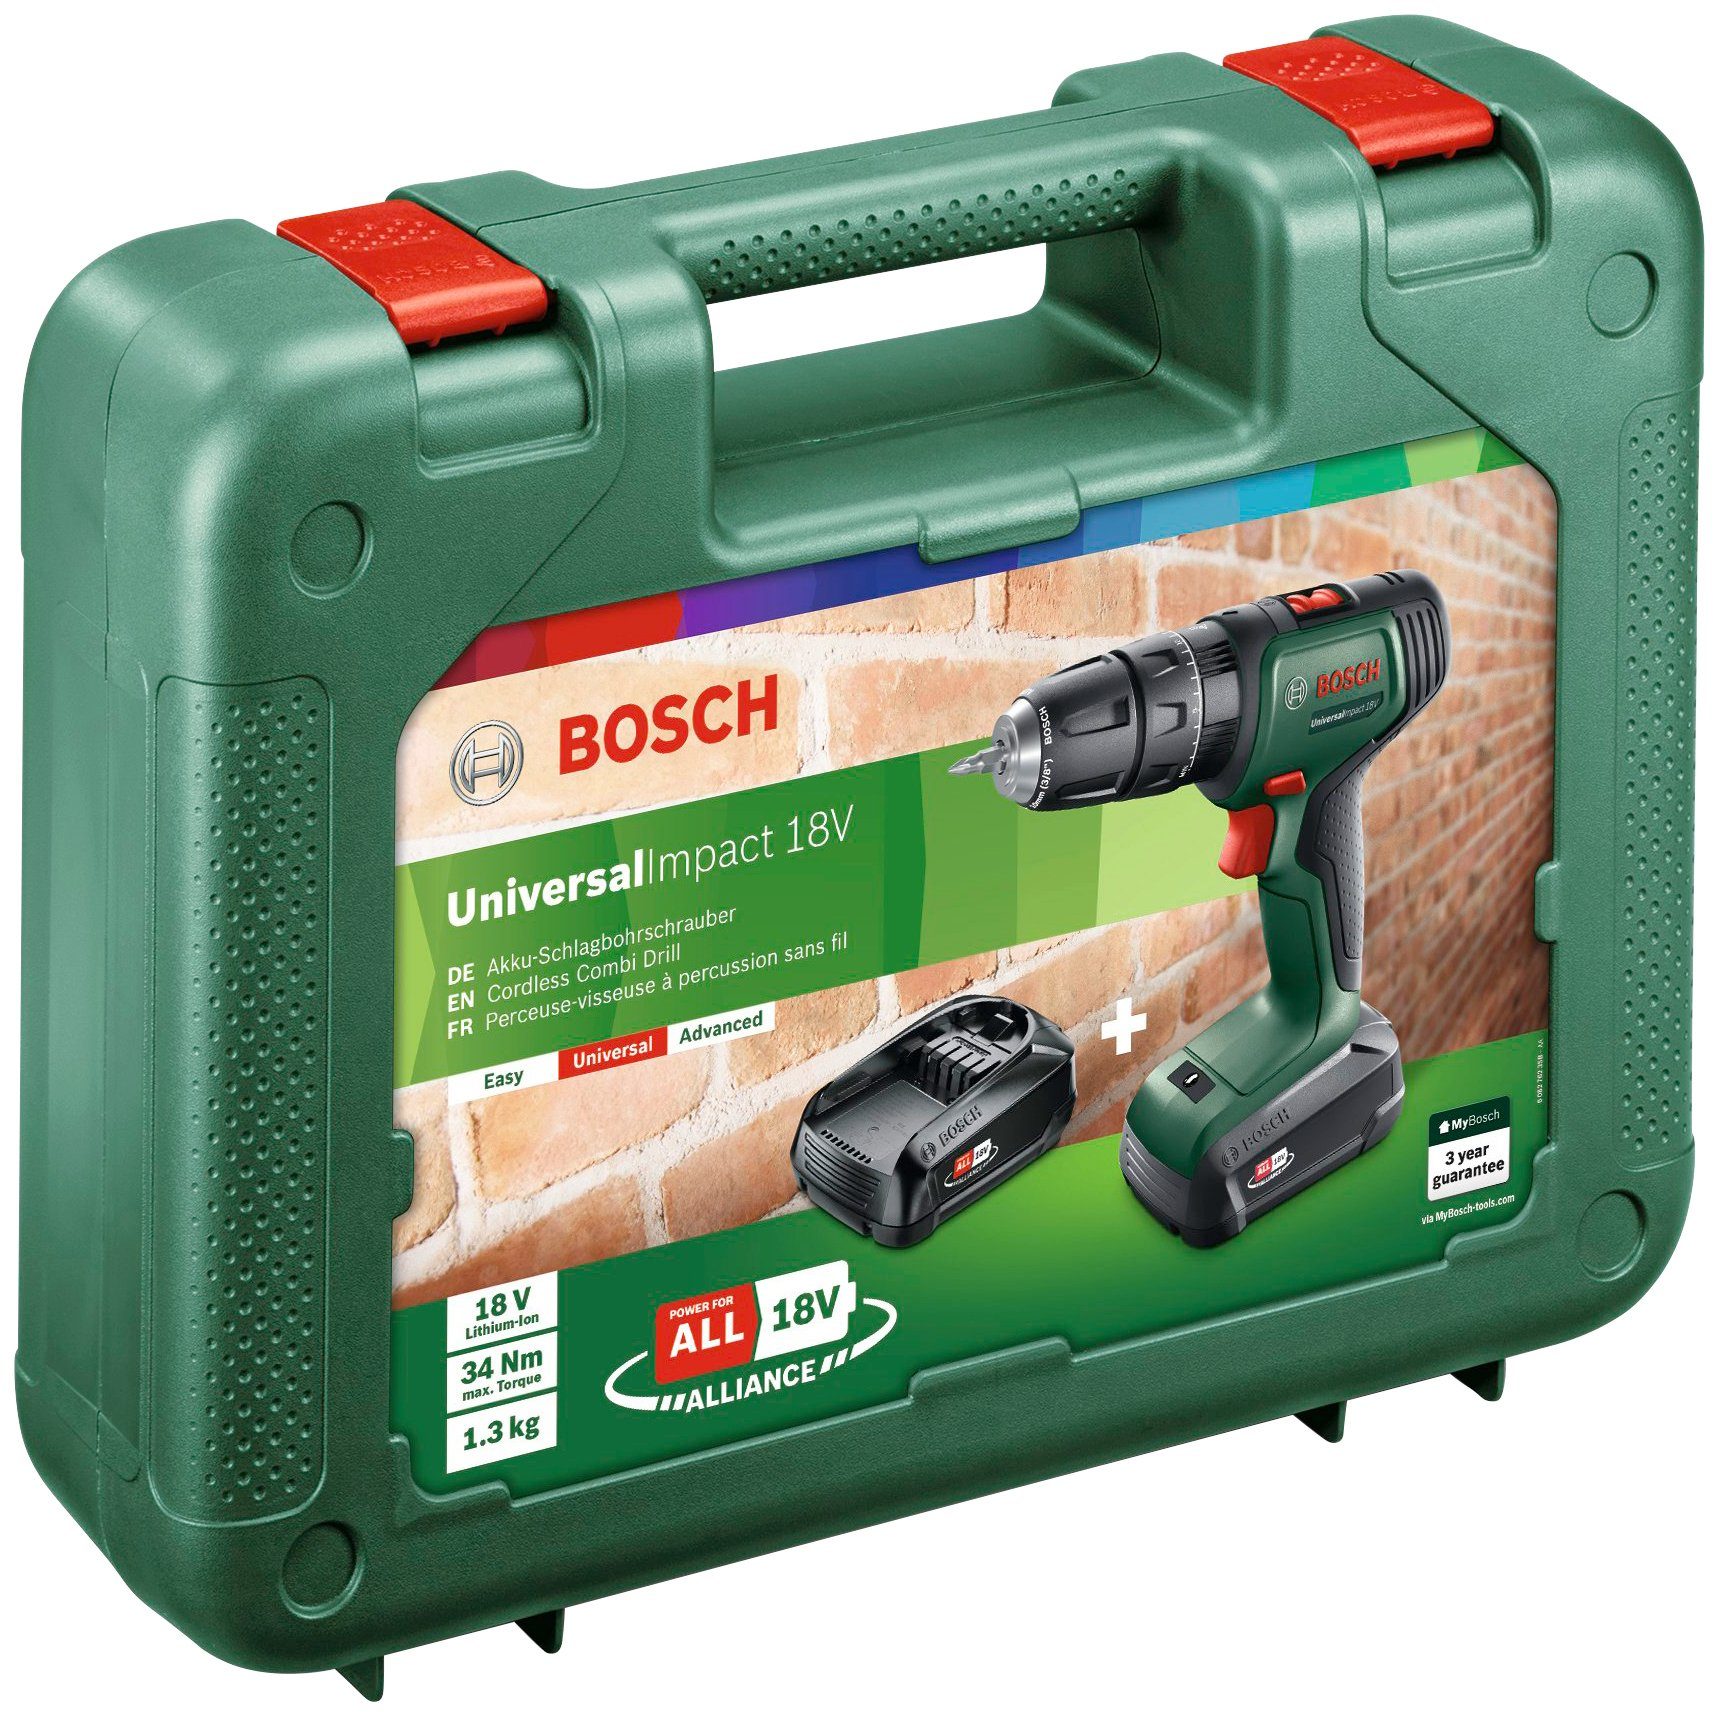 Bosch Home & Garden Ladegerät 1450 UniversalImpact Akkus U/min, 2 max. und 18V, mit Akku-Schlagbohrschrauber